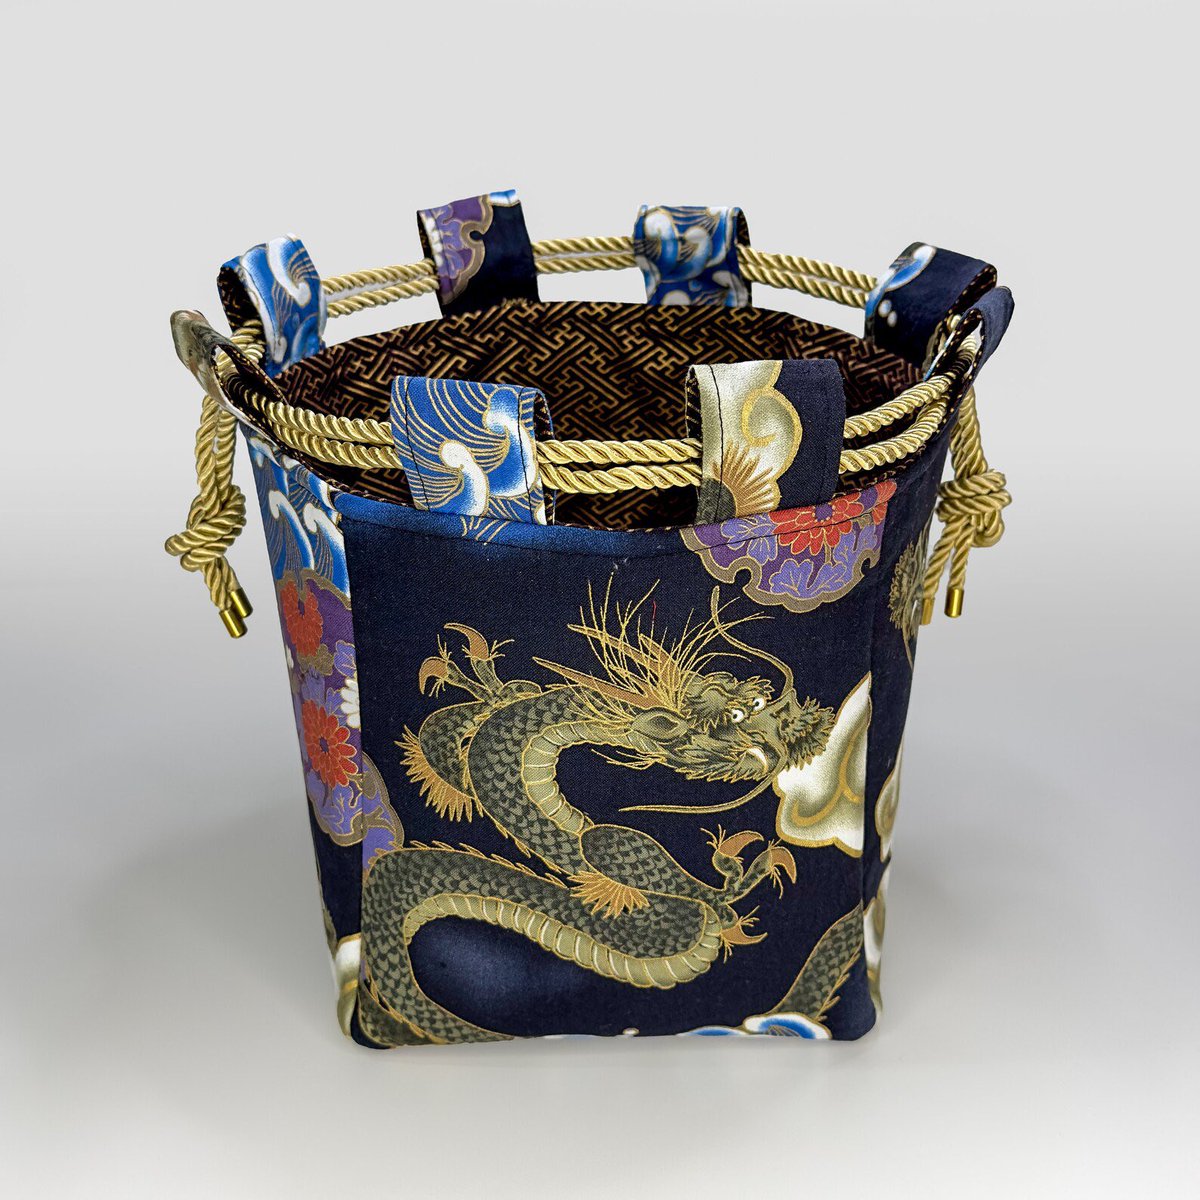 Dragon Pattern Japanese Rice Bag japangiftsuk.etsy.com/listing/166973…

#MHHSBD #Handcrafted #JapanGifts #earlybiz #handmadehour #CraftBizParty #giftideas #UKCraftersHour #ShopSmall #UKGiftHour #UKGiftAM #inbizhour #smallbusiness #CelebsForSmallBiz #UKMakers #bizbubble #YourBizHour #etsyfinds…